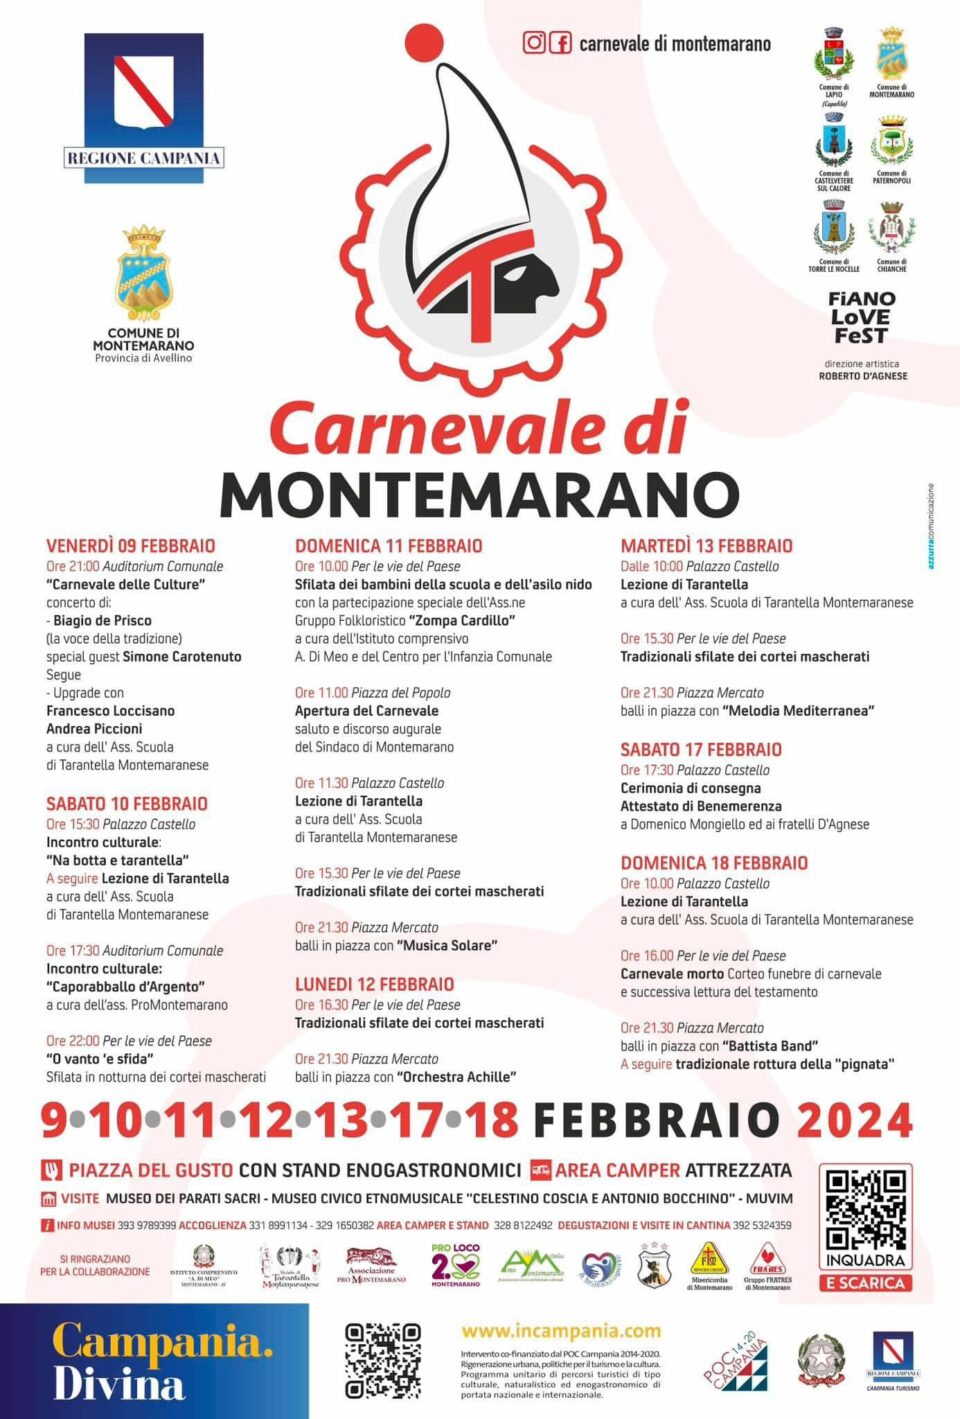 Carnevale di Montemarano 2024: il programma